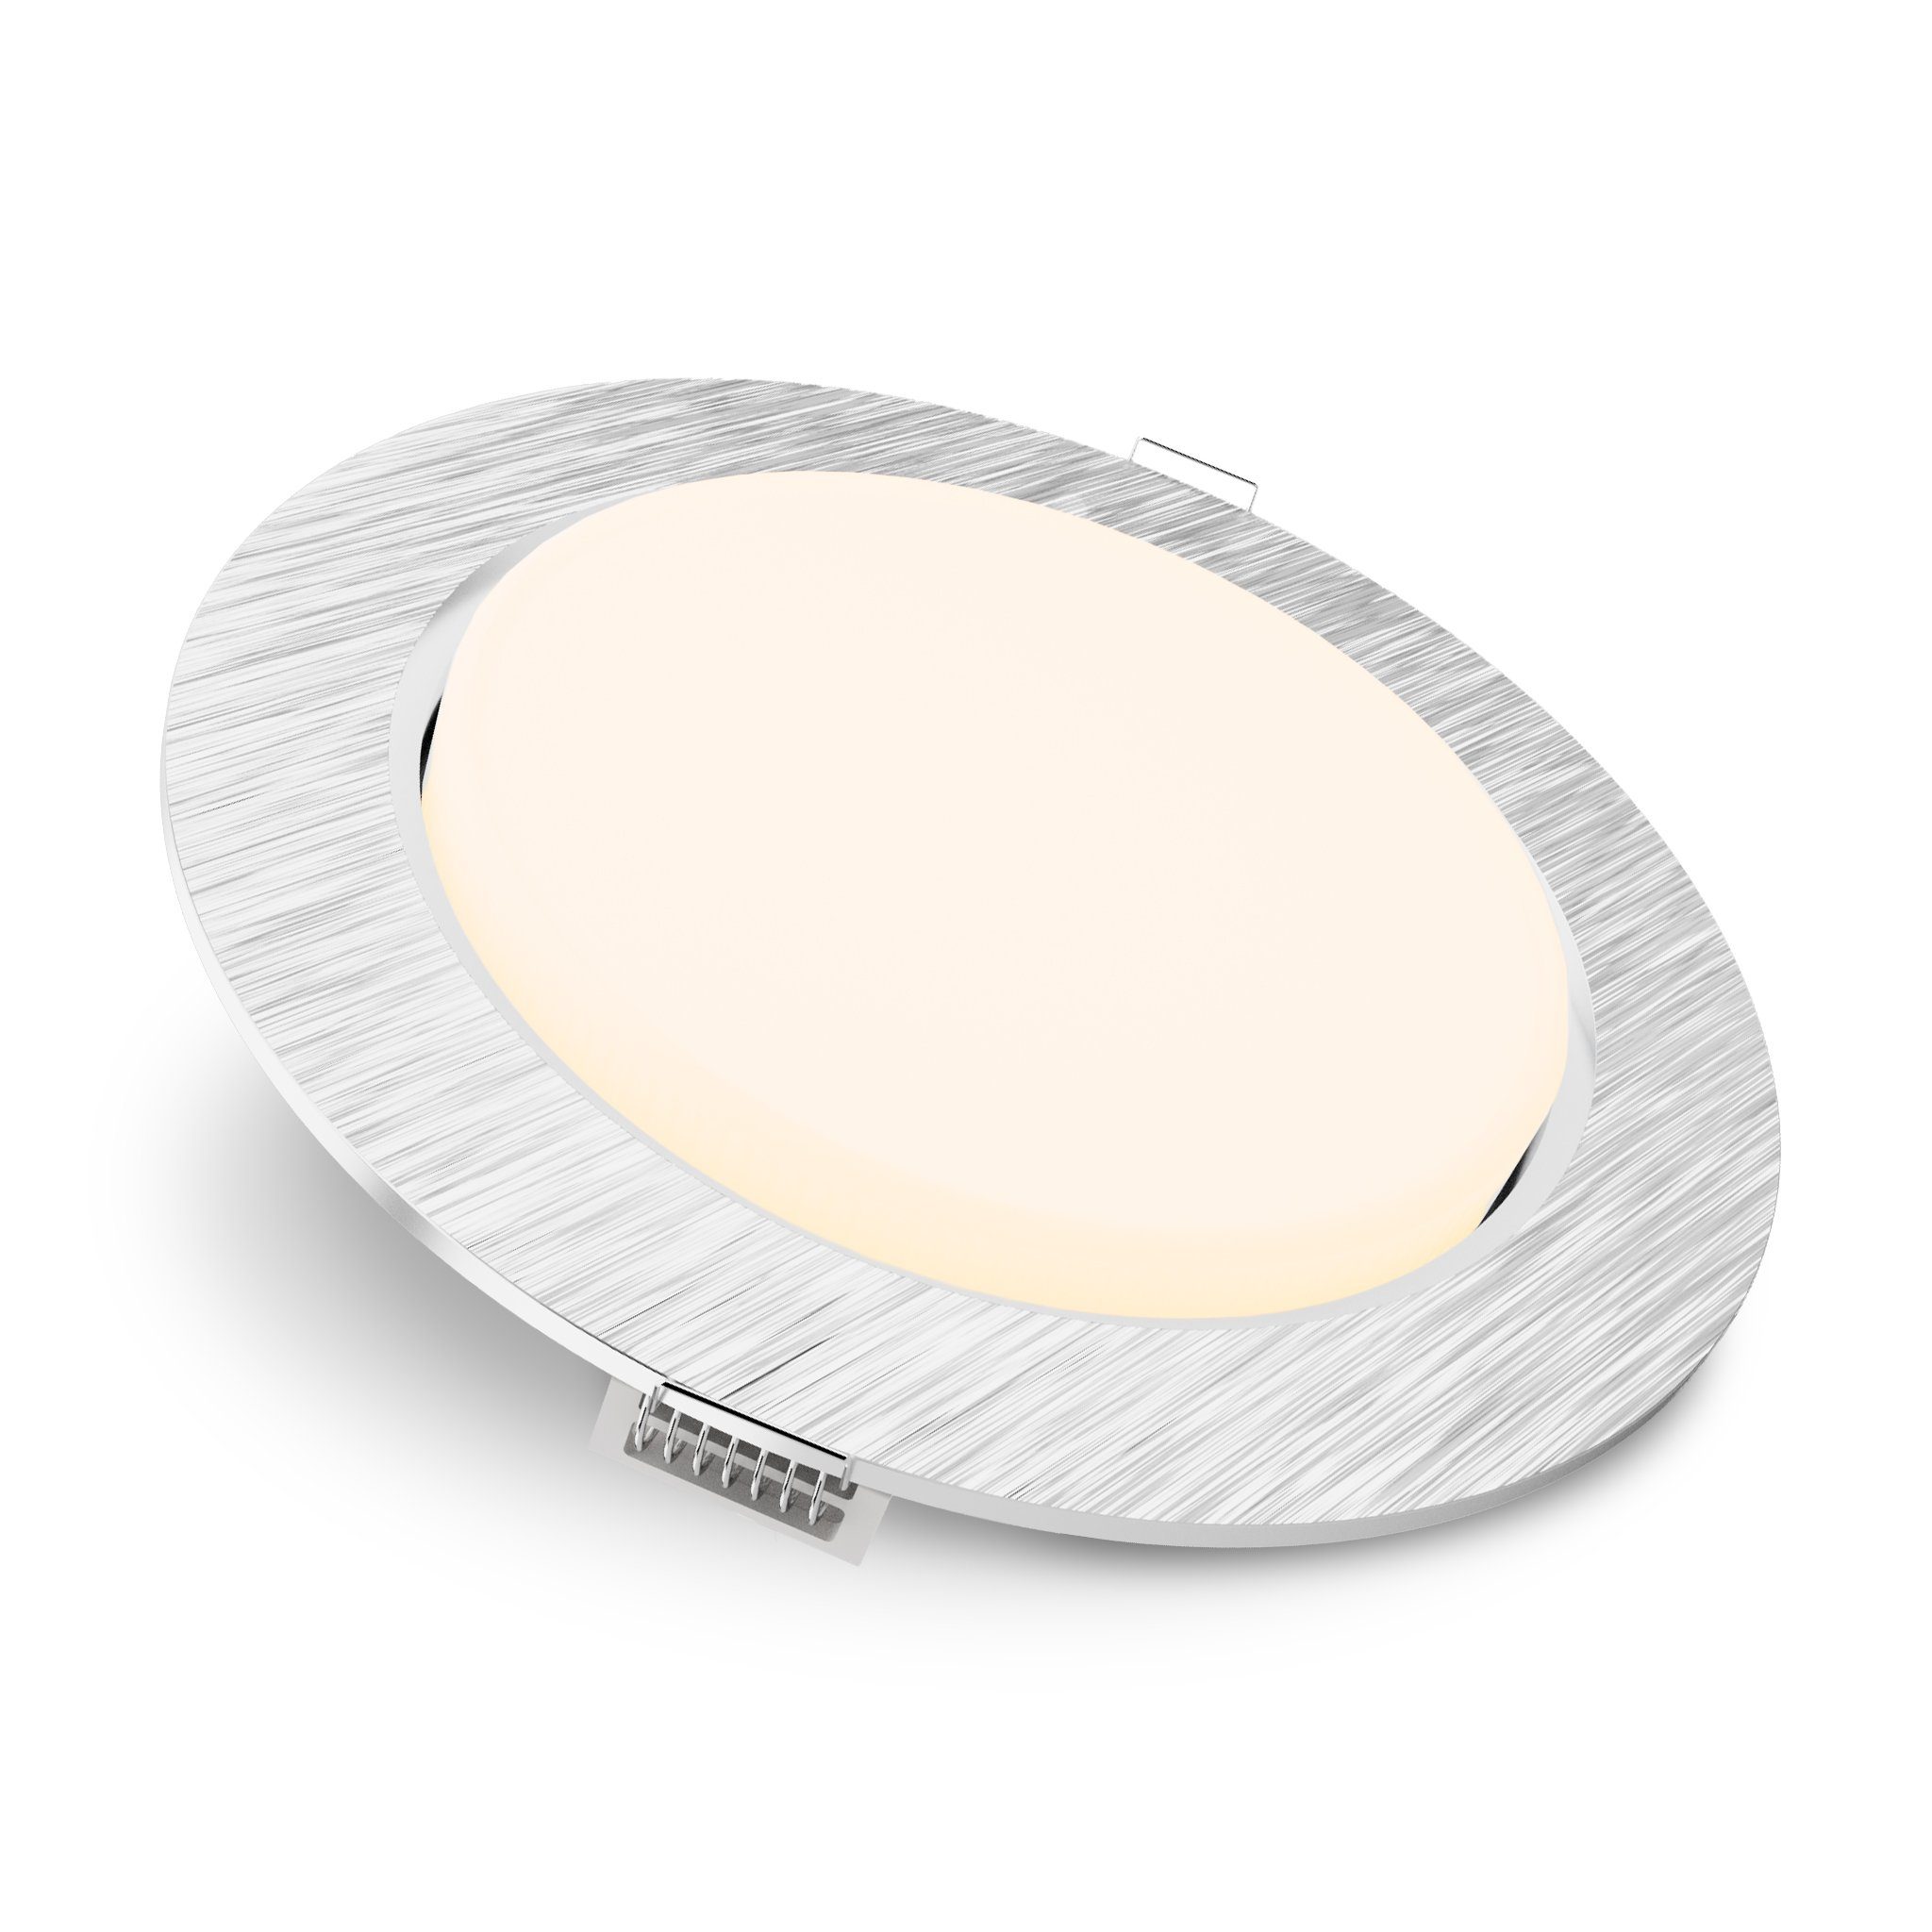 SSC-LUXon LED Einbaustrahler RX-3 flache LED Einbauleuchte Alu rund mit LED GX53 dimmbar mit 4,5W, Warmweiß | Strahler